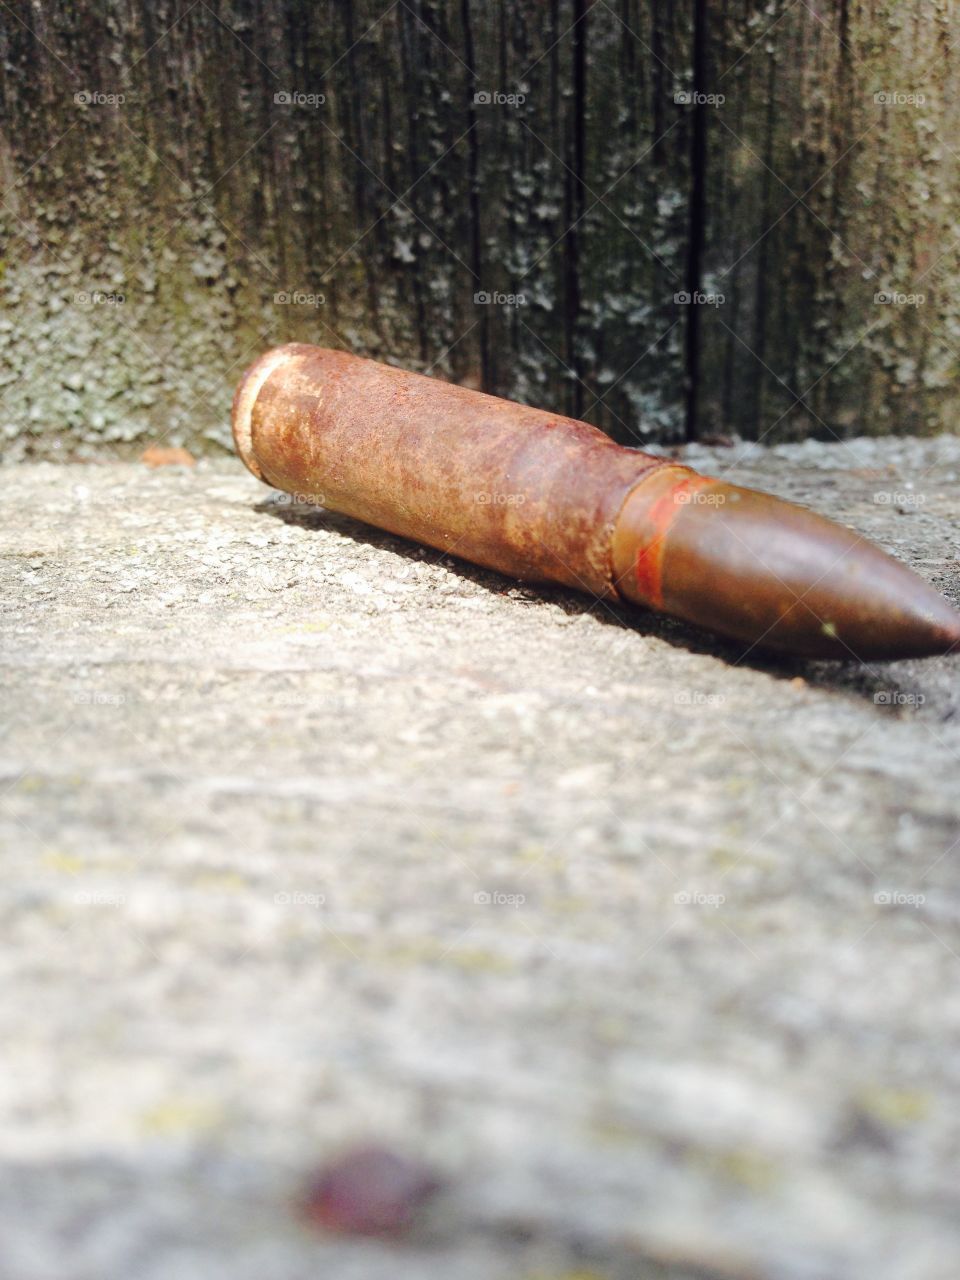 Old bullet. Old real bullet